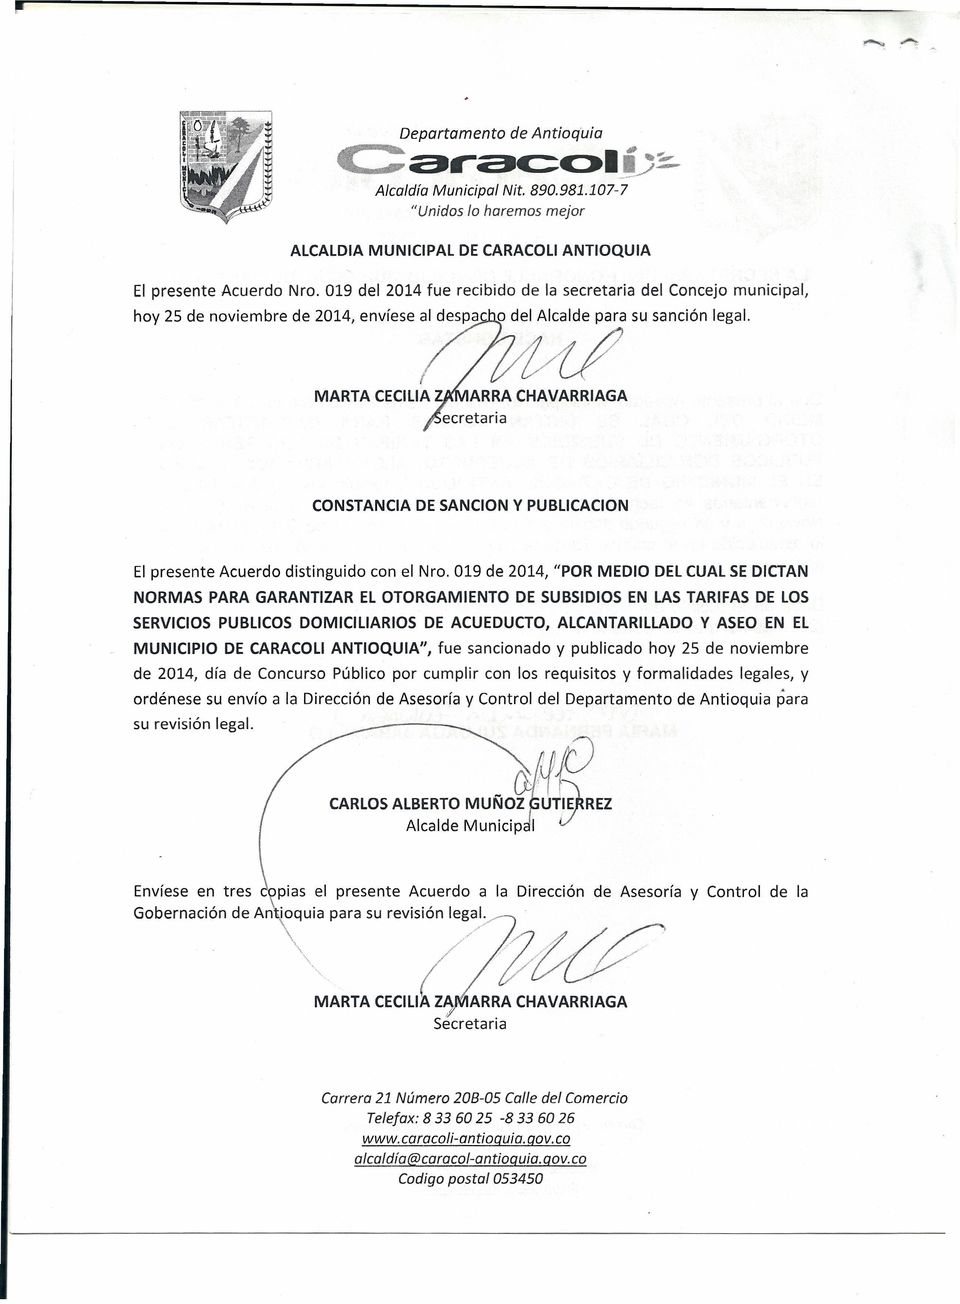 /{/ CONSTANCIA DE SANCION y PUBLlCACION El presente Acuerdo distinguido con el Nro.